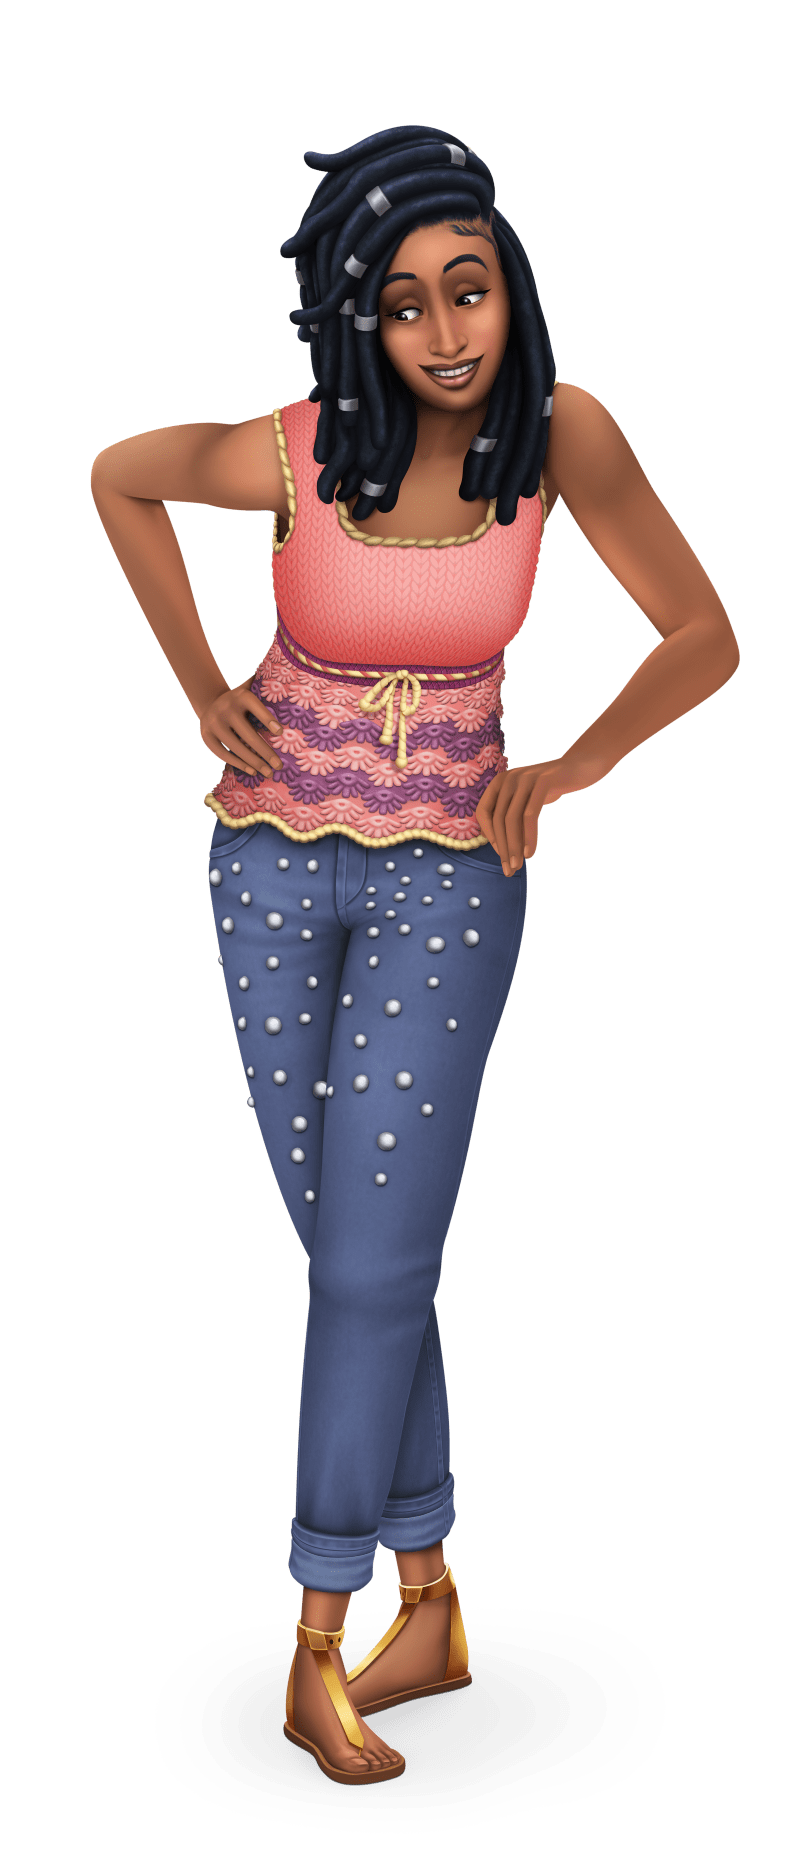 The Sims 4 Truques de Tricô: Capa Logo Ícone e Renders